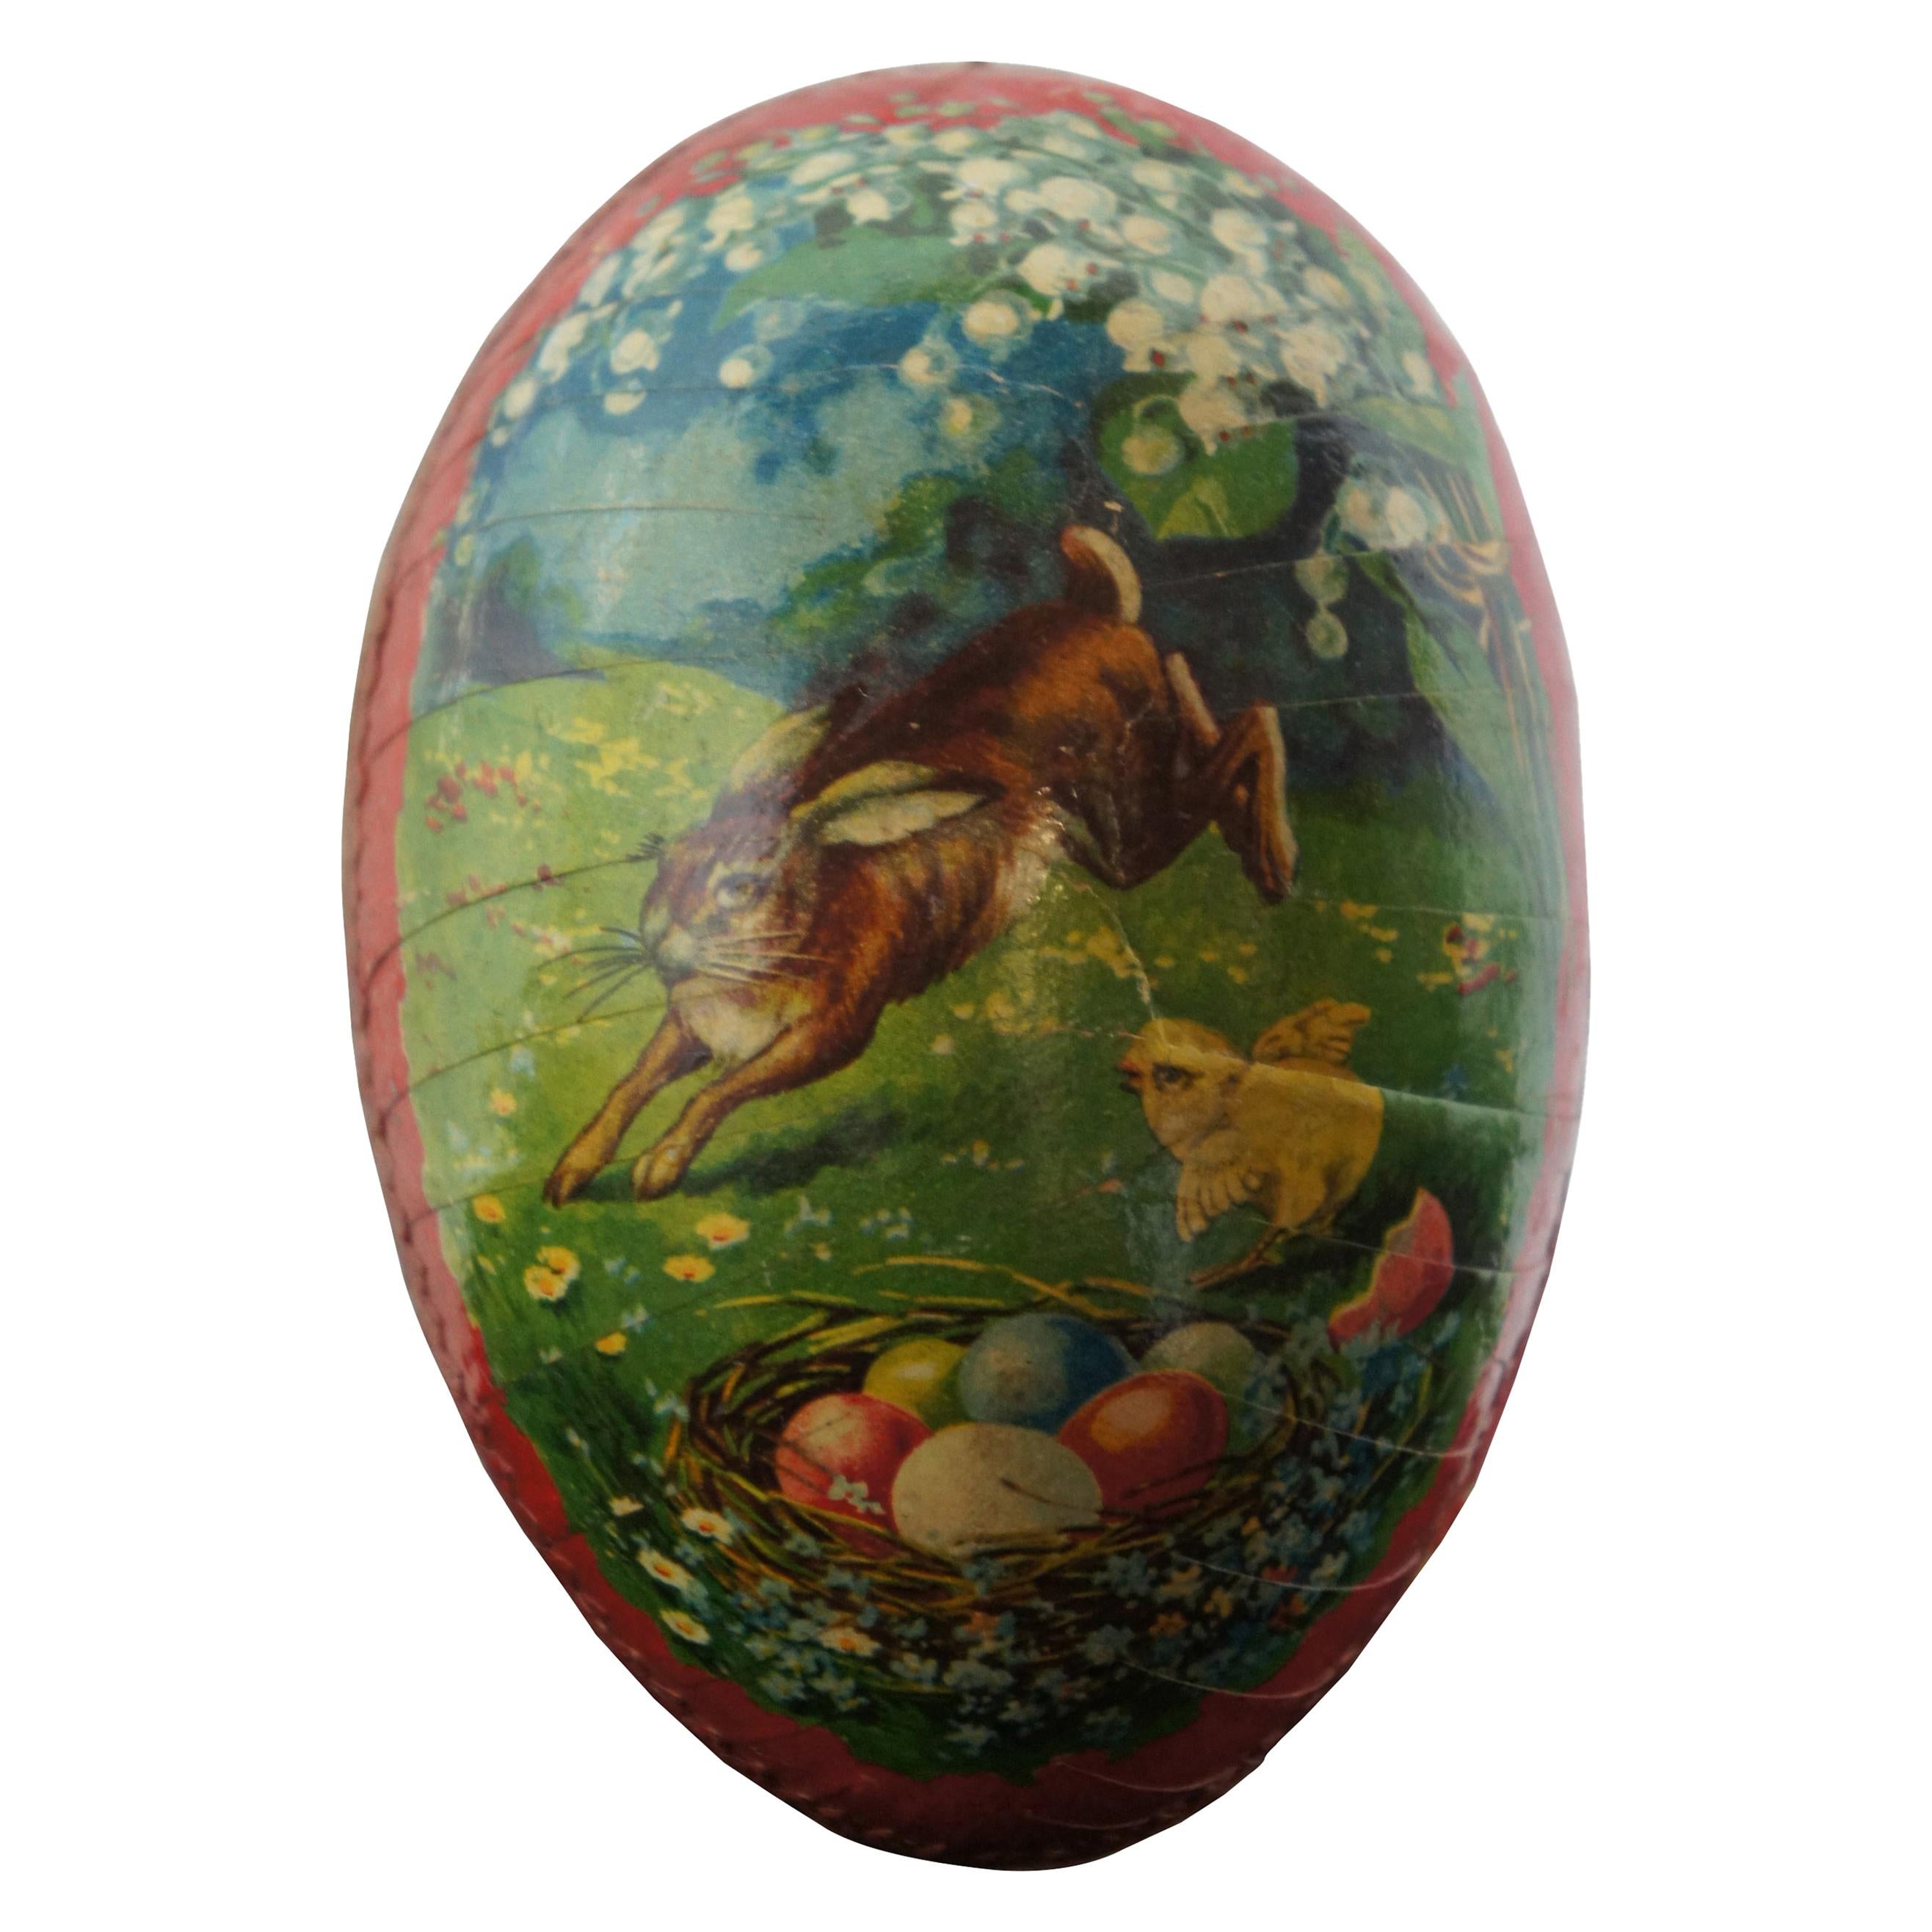 Papier Mache Shapes Sale 18cm Paper Mache Standing Easter Egg with Details